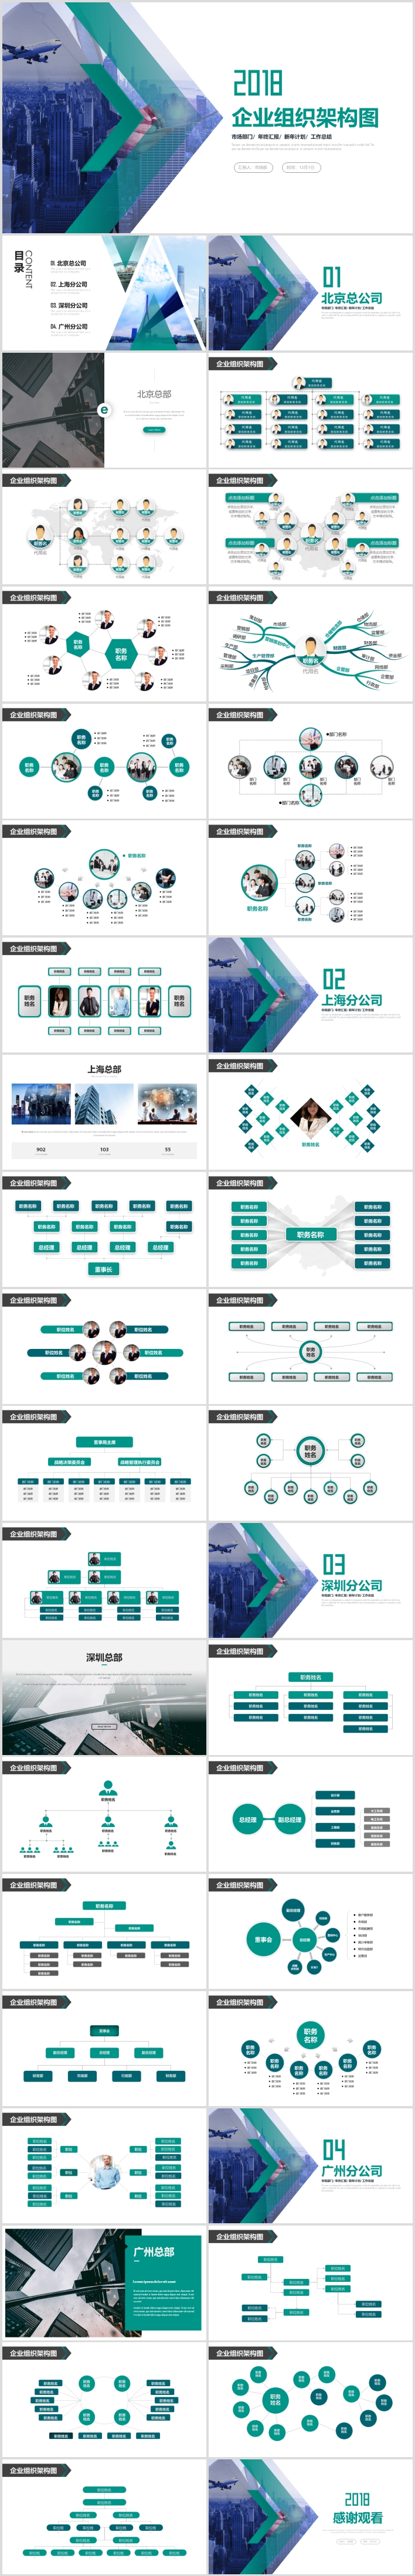 企业组织架构图组织结构图ppt模板